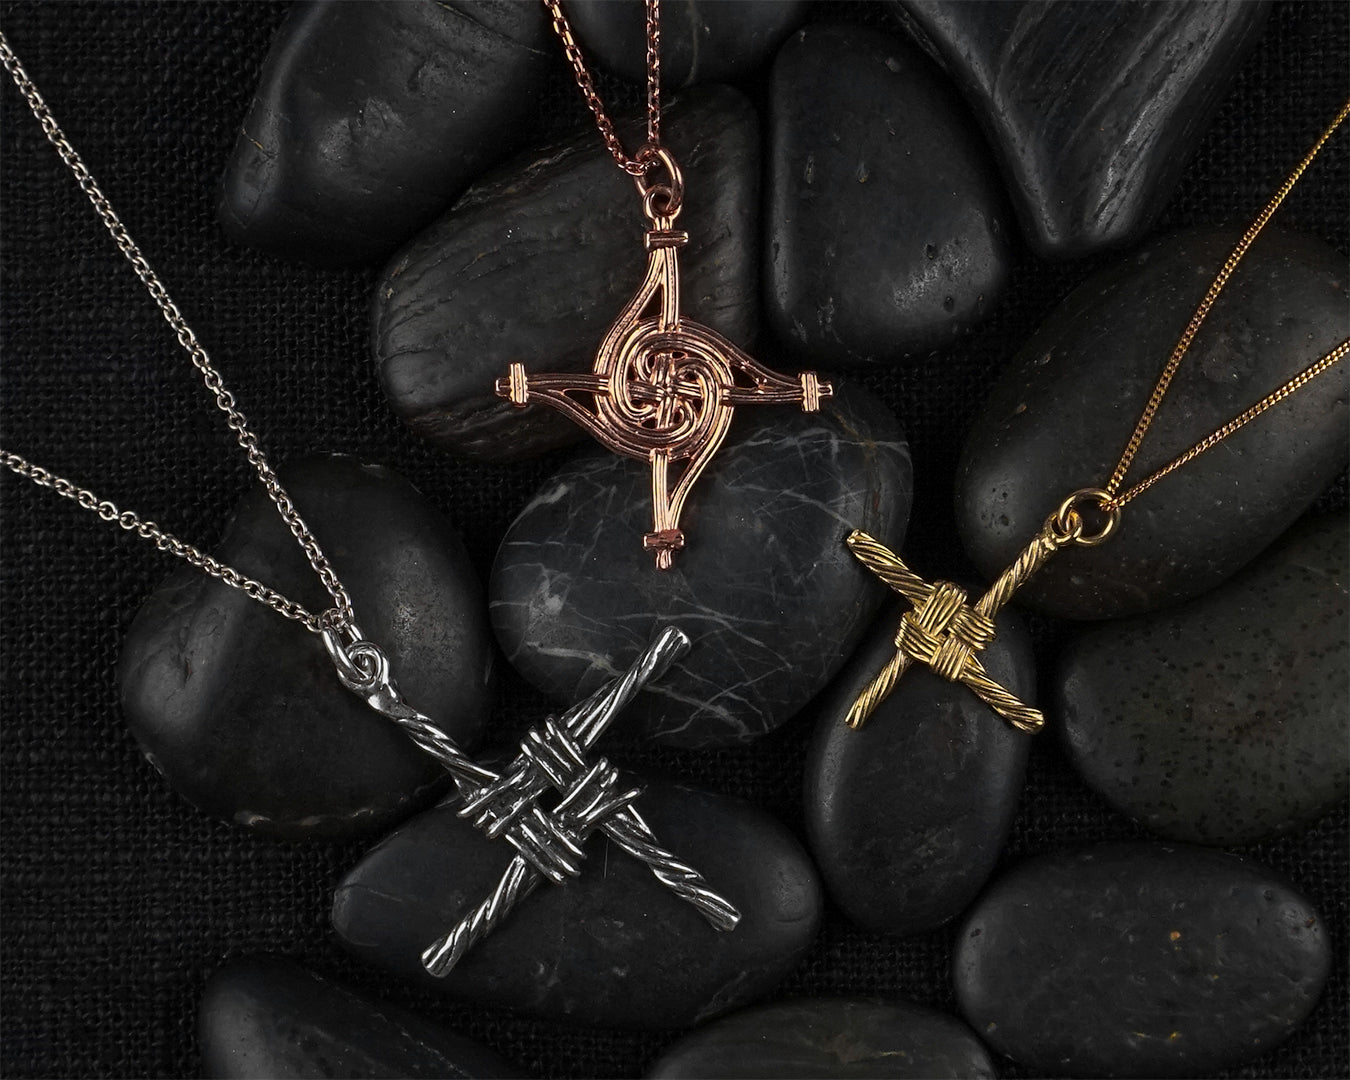 Saint Brigid's Cross Necklace, Celtic Cross Pendant, Irish Jewelry,  Religious Jewelry, Ireland Gift, St. Bridget's Cross Pendant, Mom Gift -  Etsy